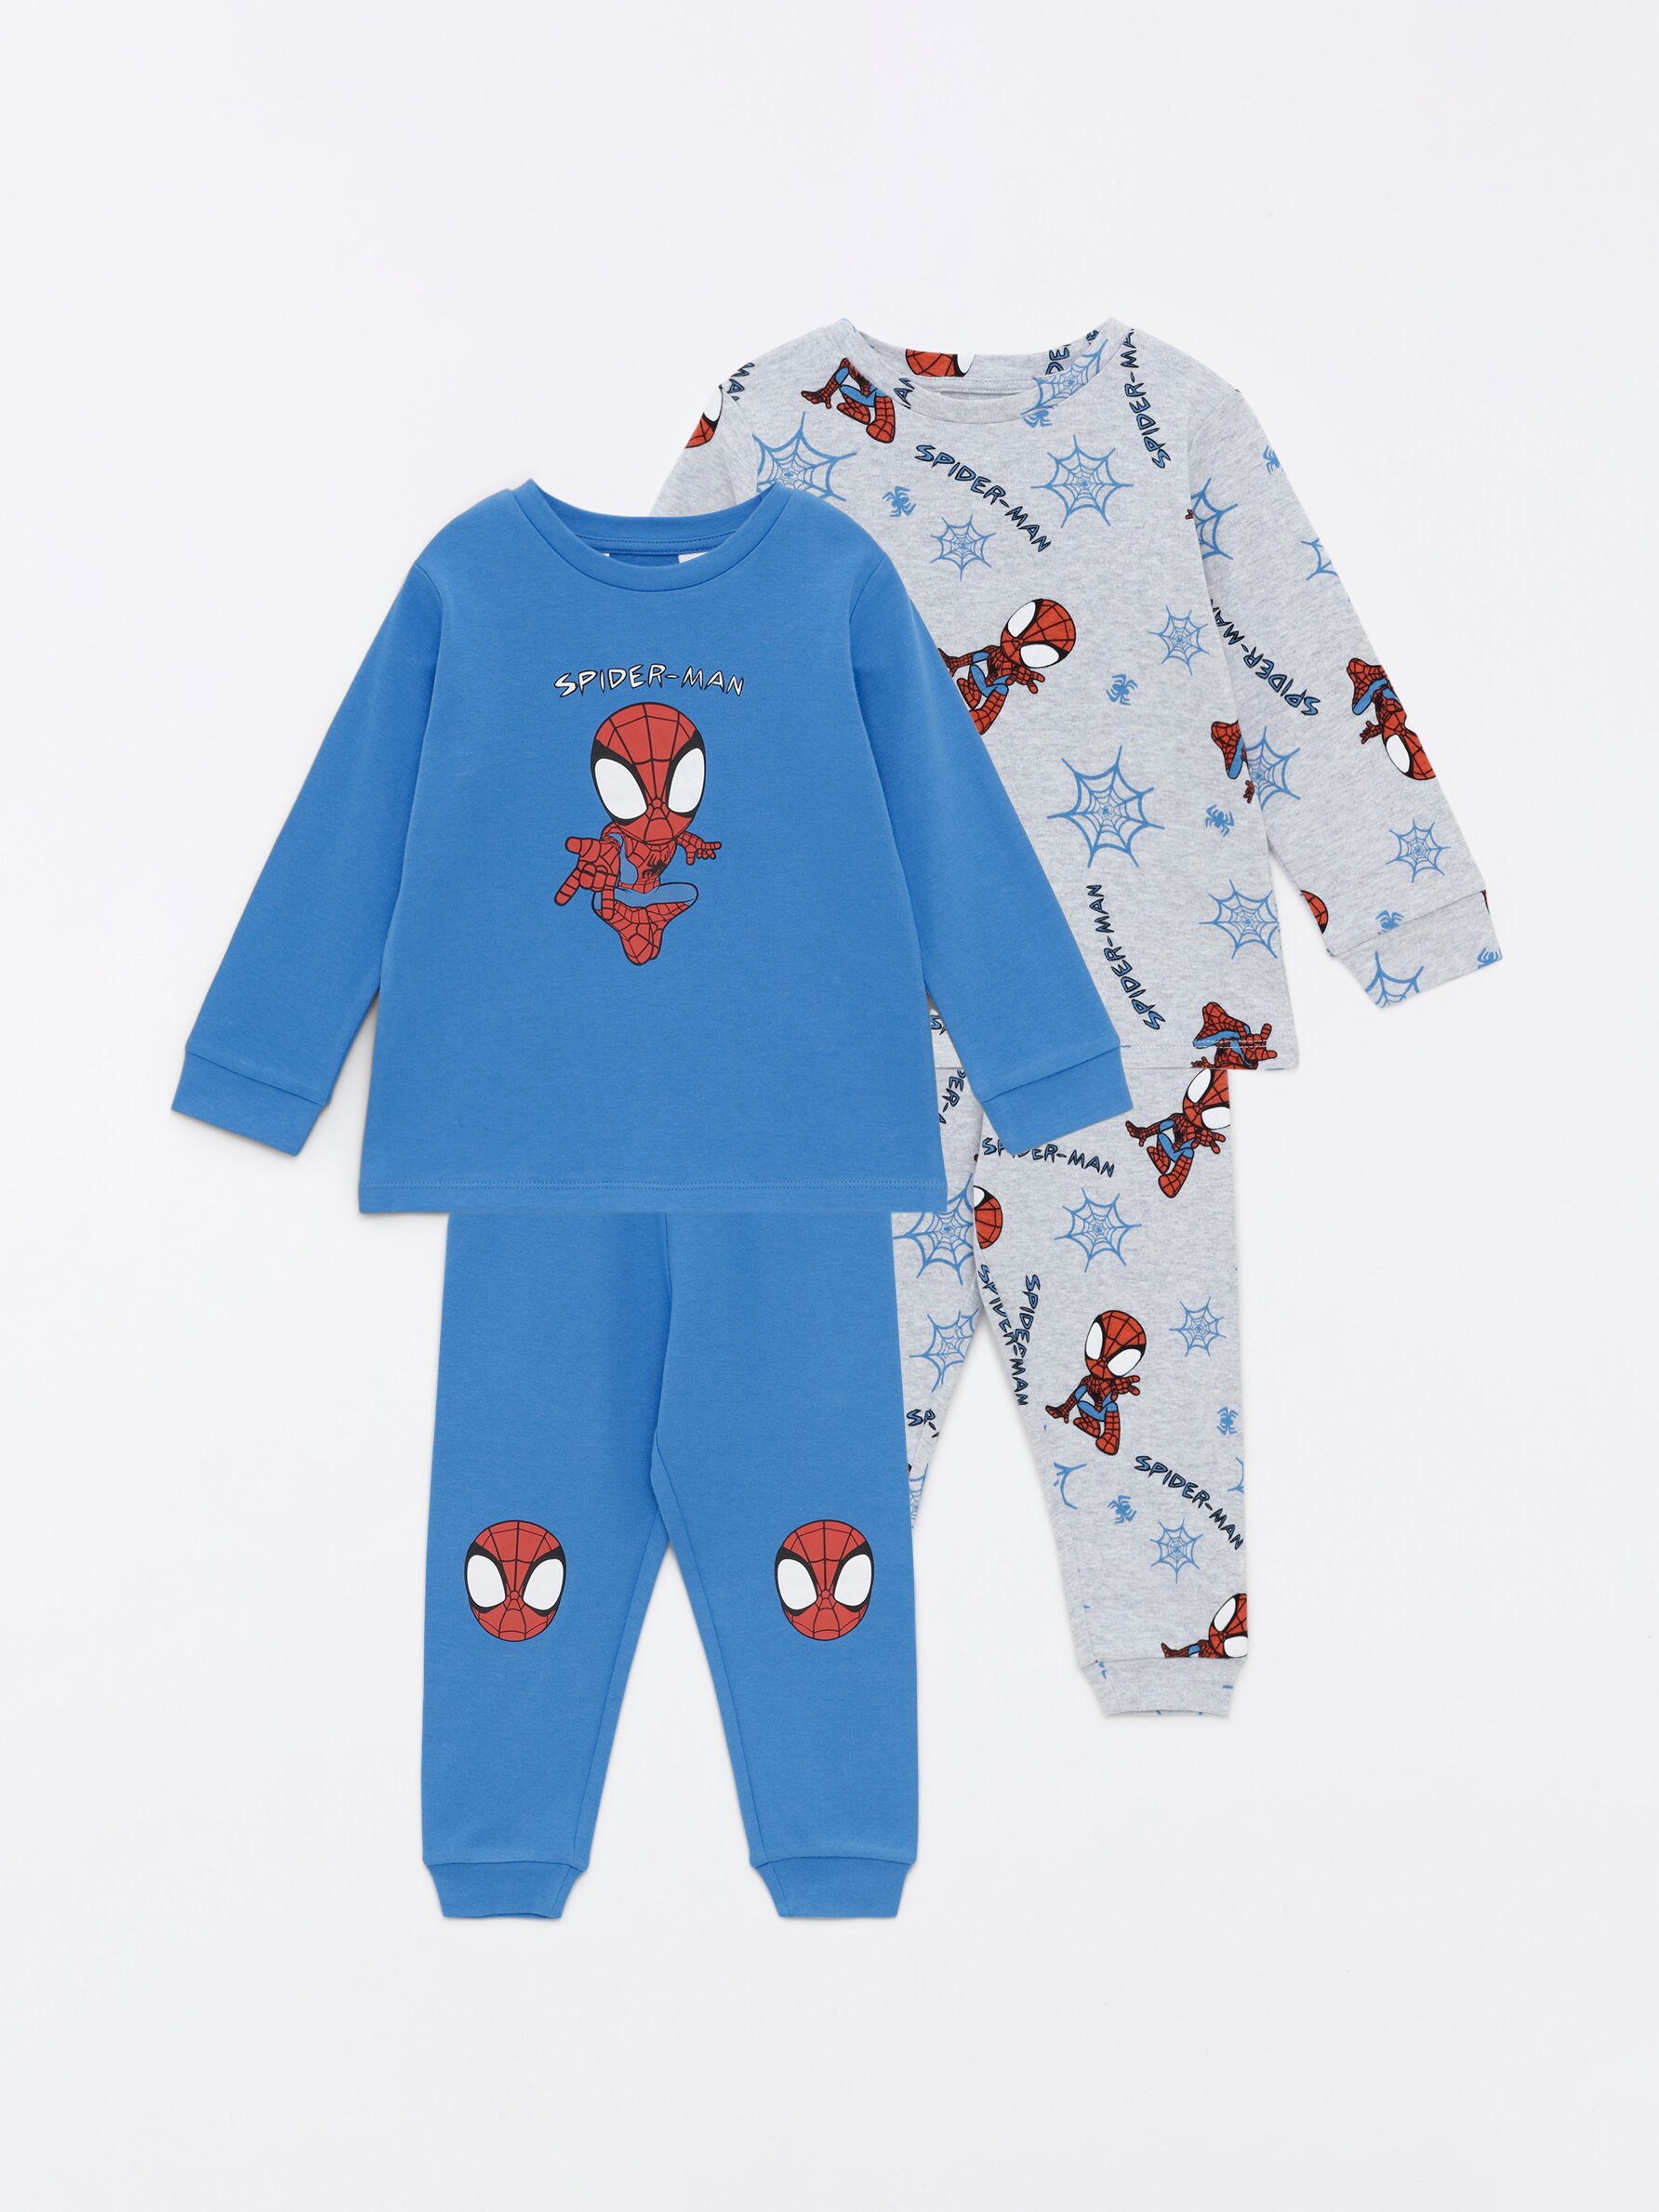 Pack de 2 conjuntos de pijama Spiderman ©Marvel - NOVEDADES - Bebé